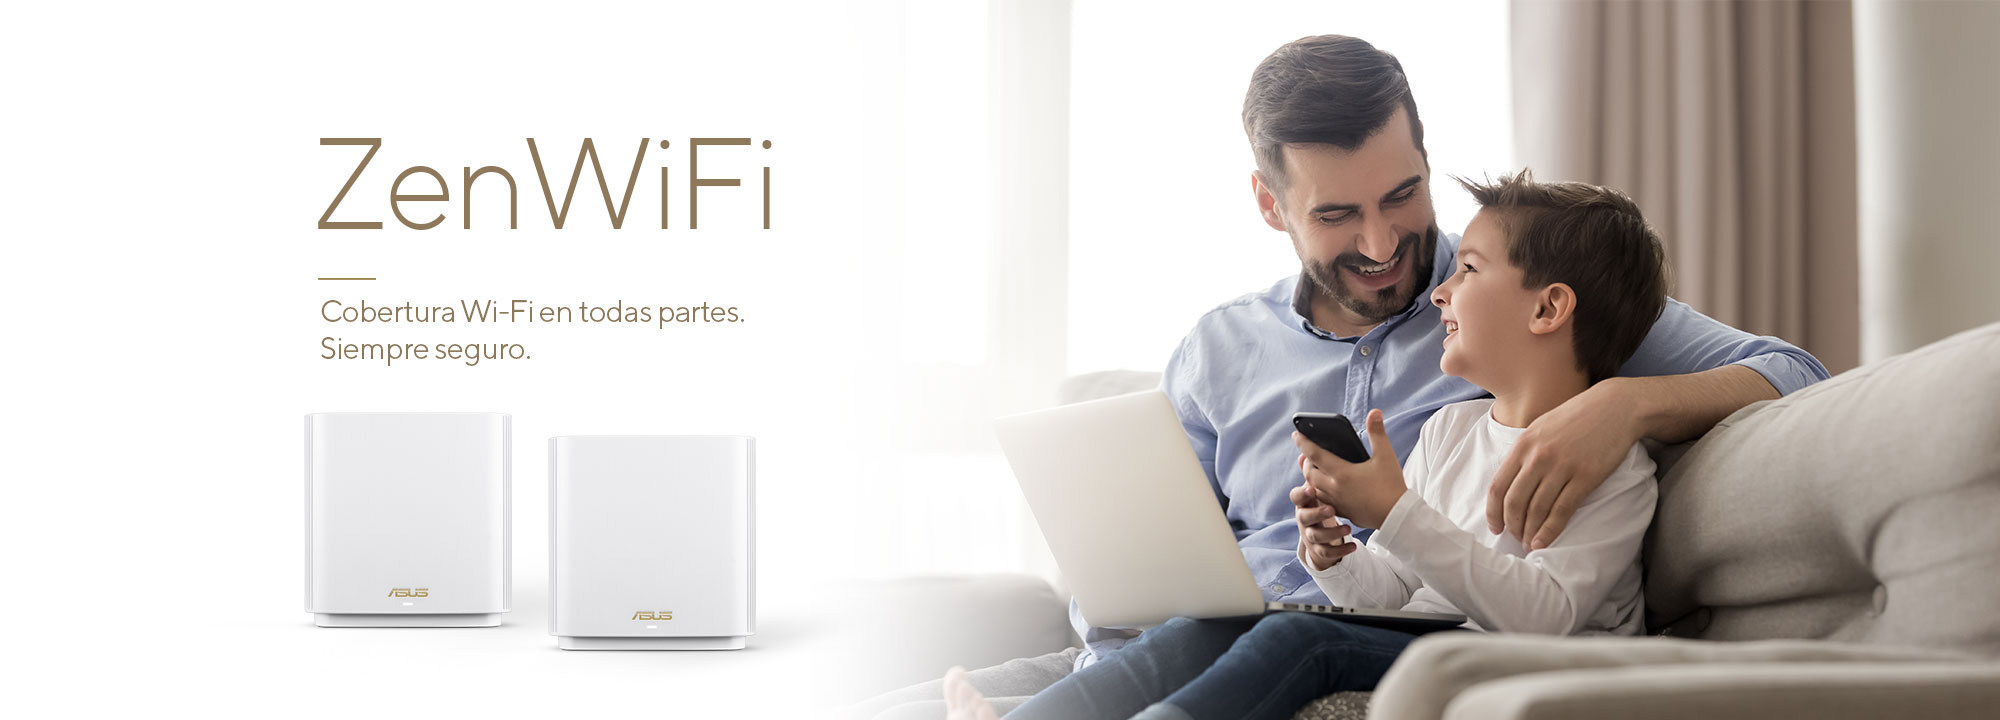 ASUS ZenWiFi es el mejor sistema WiFi de malla para toda la casa, que proporciona una conectividad WiFi estable y rápida para todos tus dispositivos.